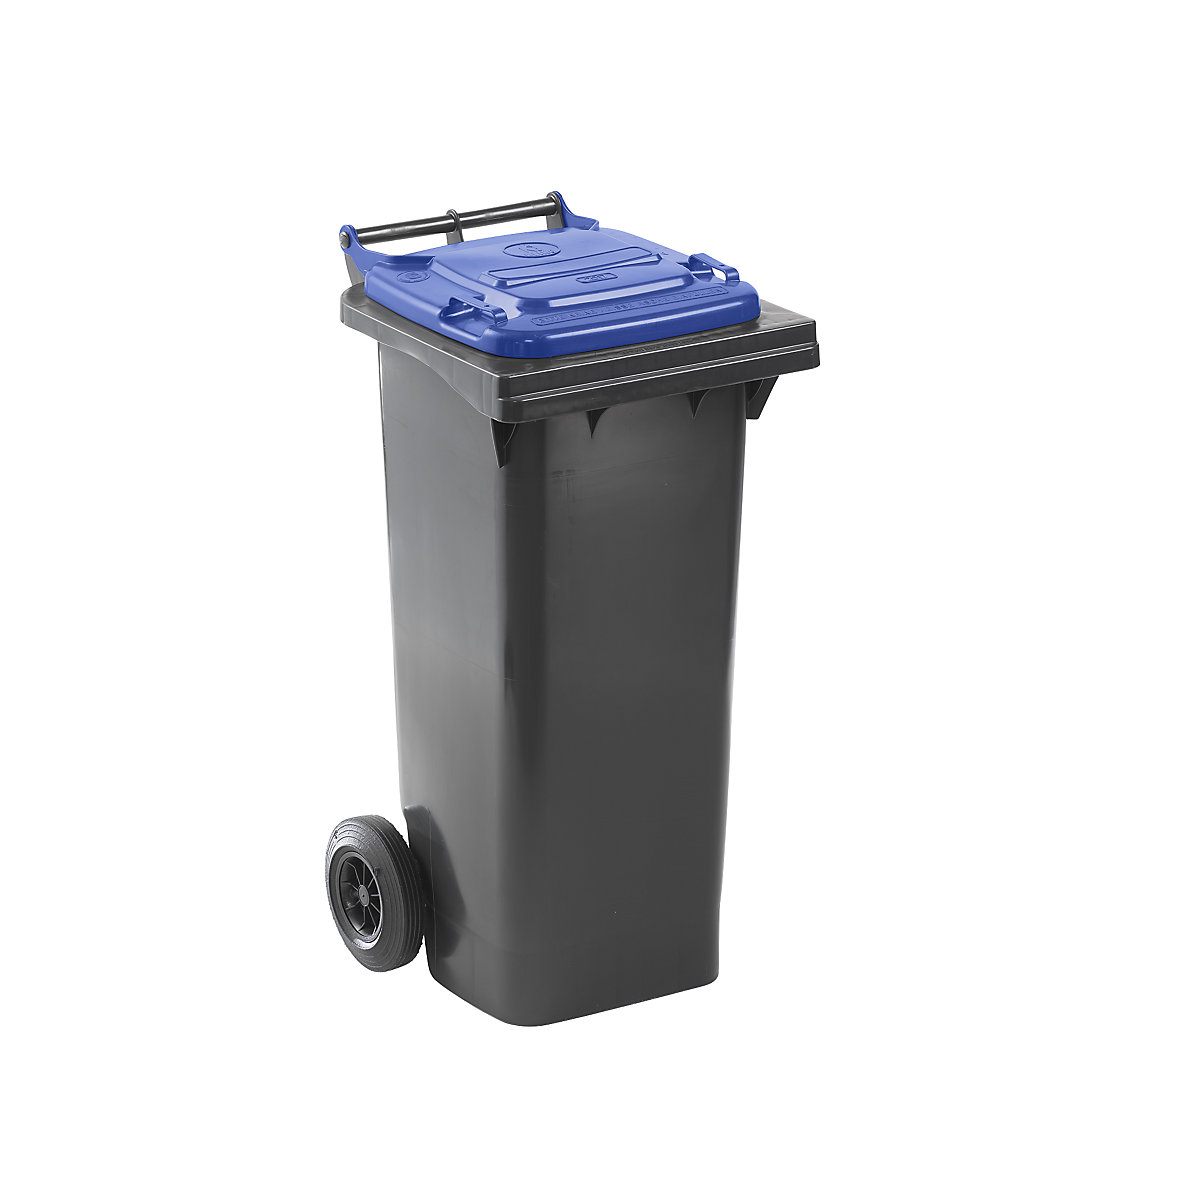 DIN EN 840 szabvány szerinti hulladékgyűjtő, űrtartalom 80 l, szé x ma x mé 448 x 975 x 530 mm, antracit színben, kék fedéllel